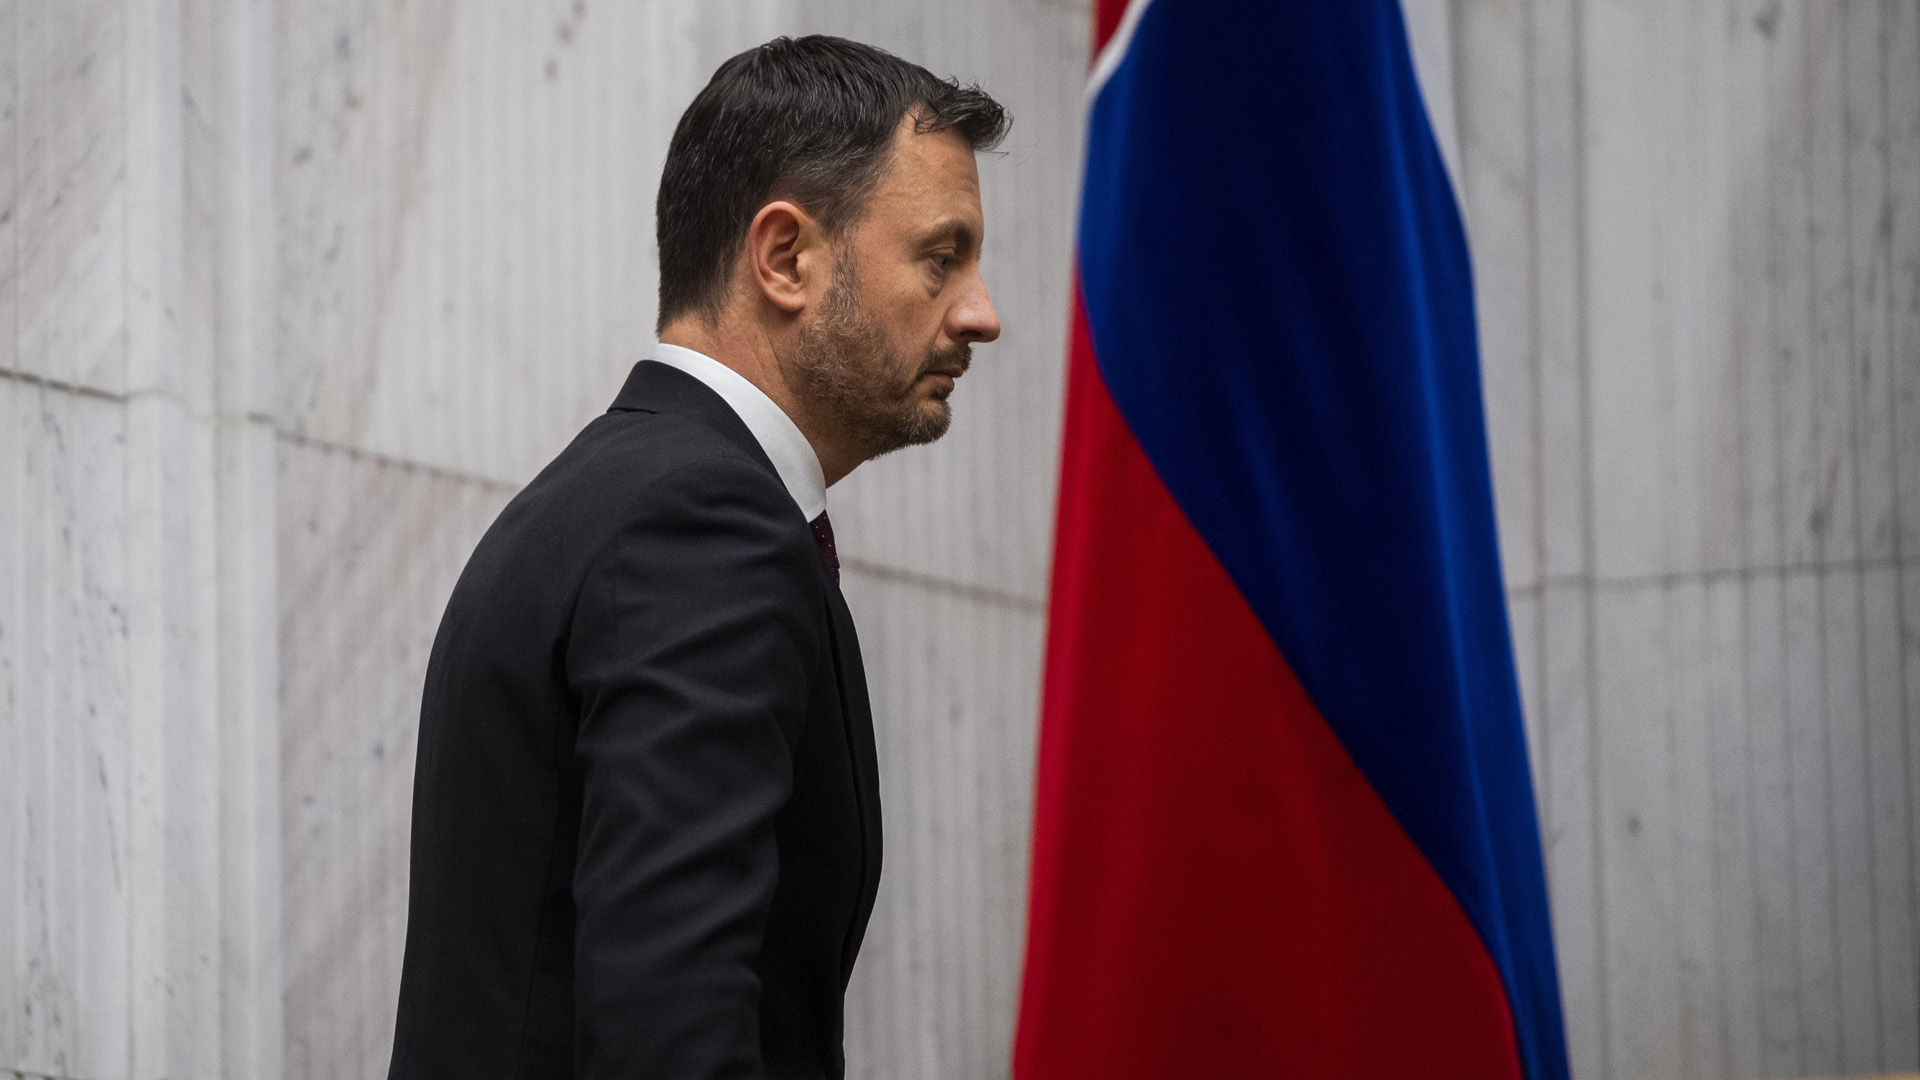 Mosi tidak percaya: penggulingan pemerintah Slovakia |  tagesschau.de